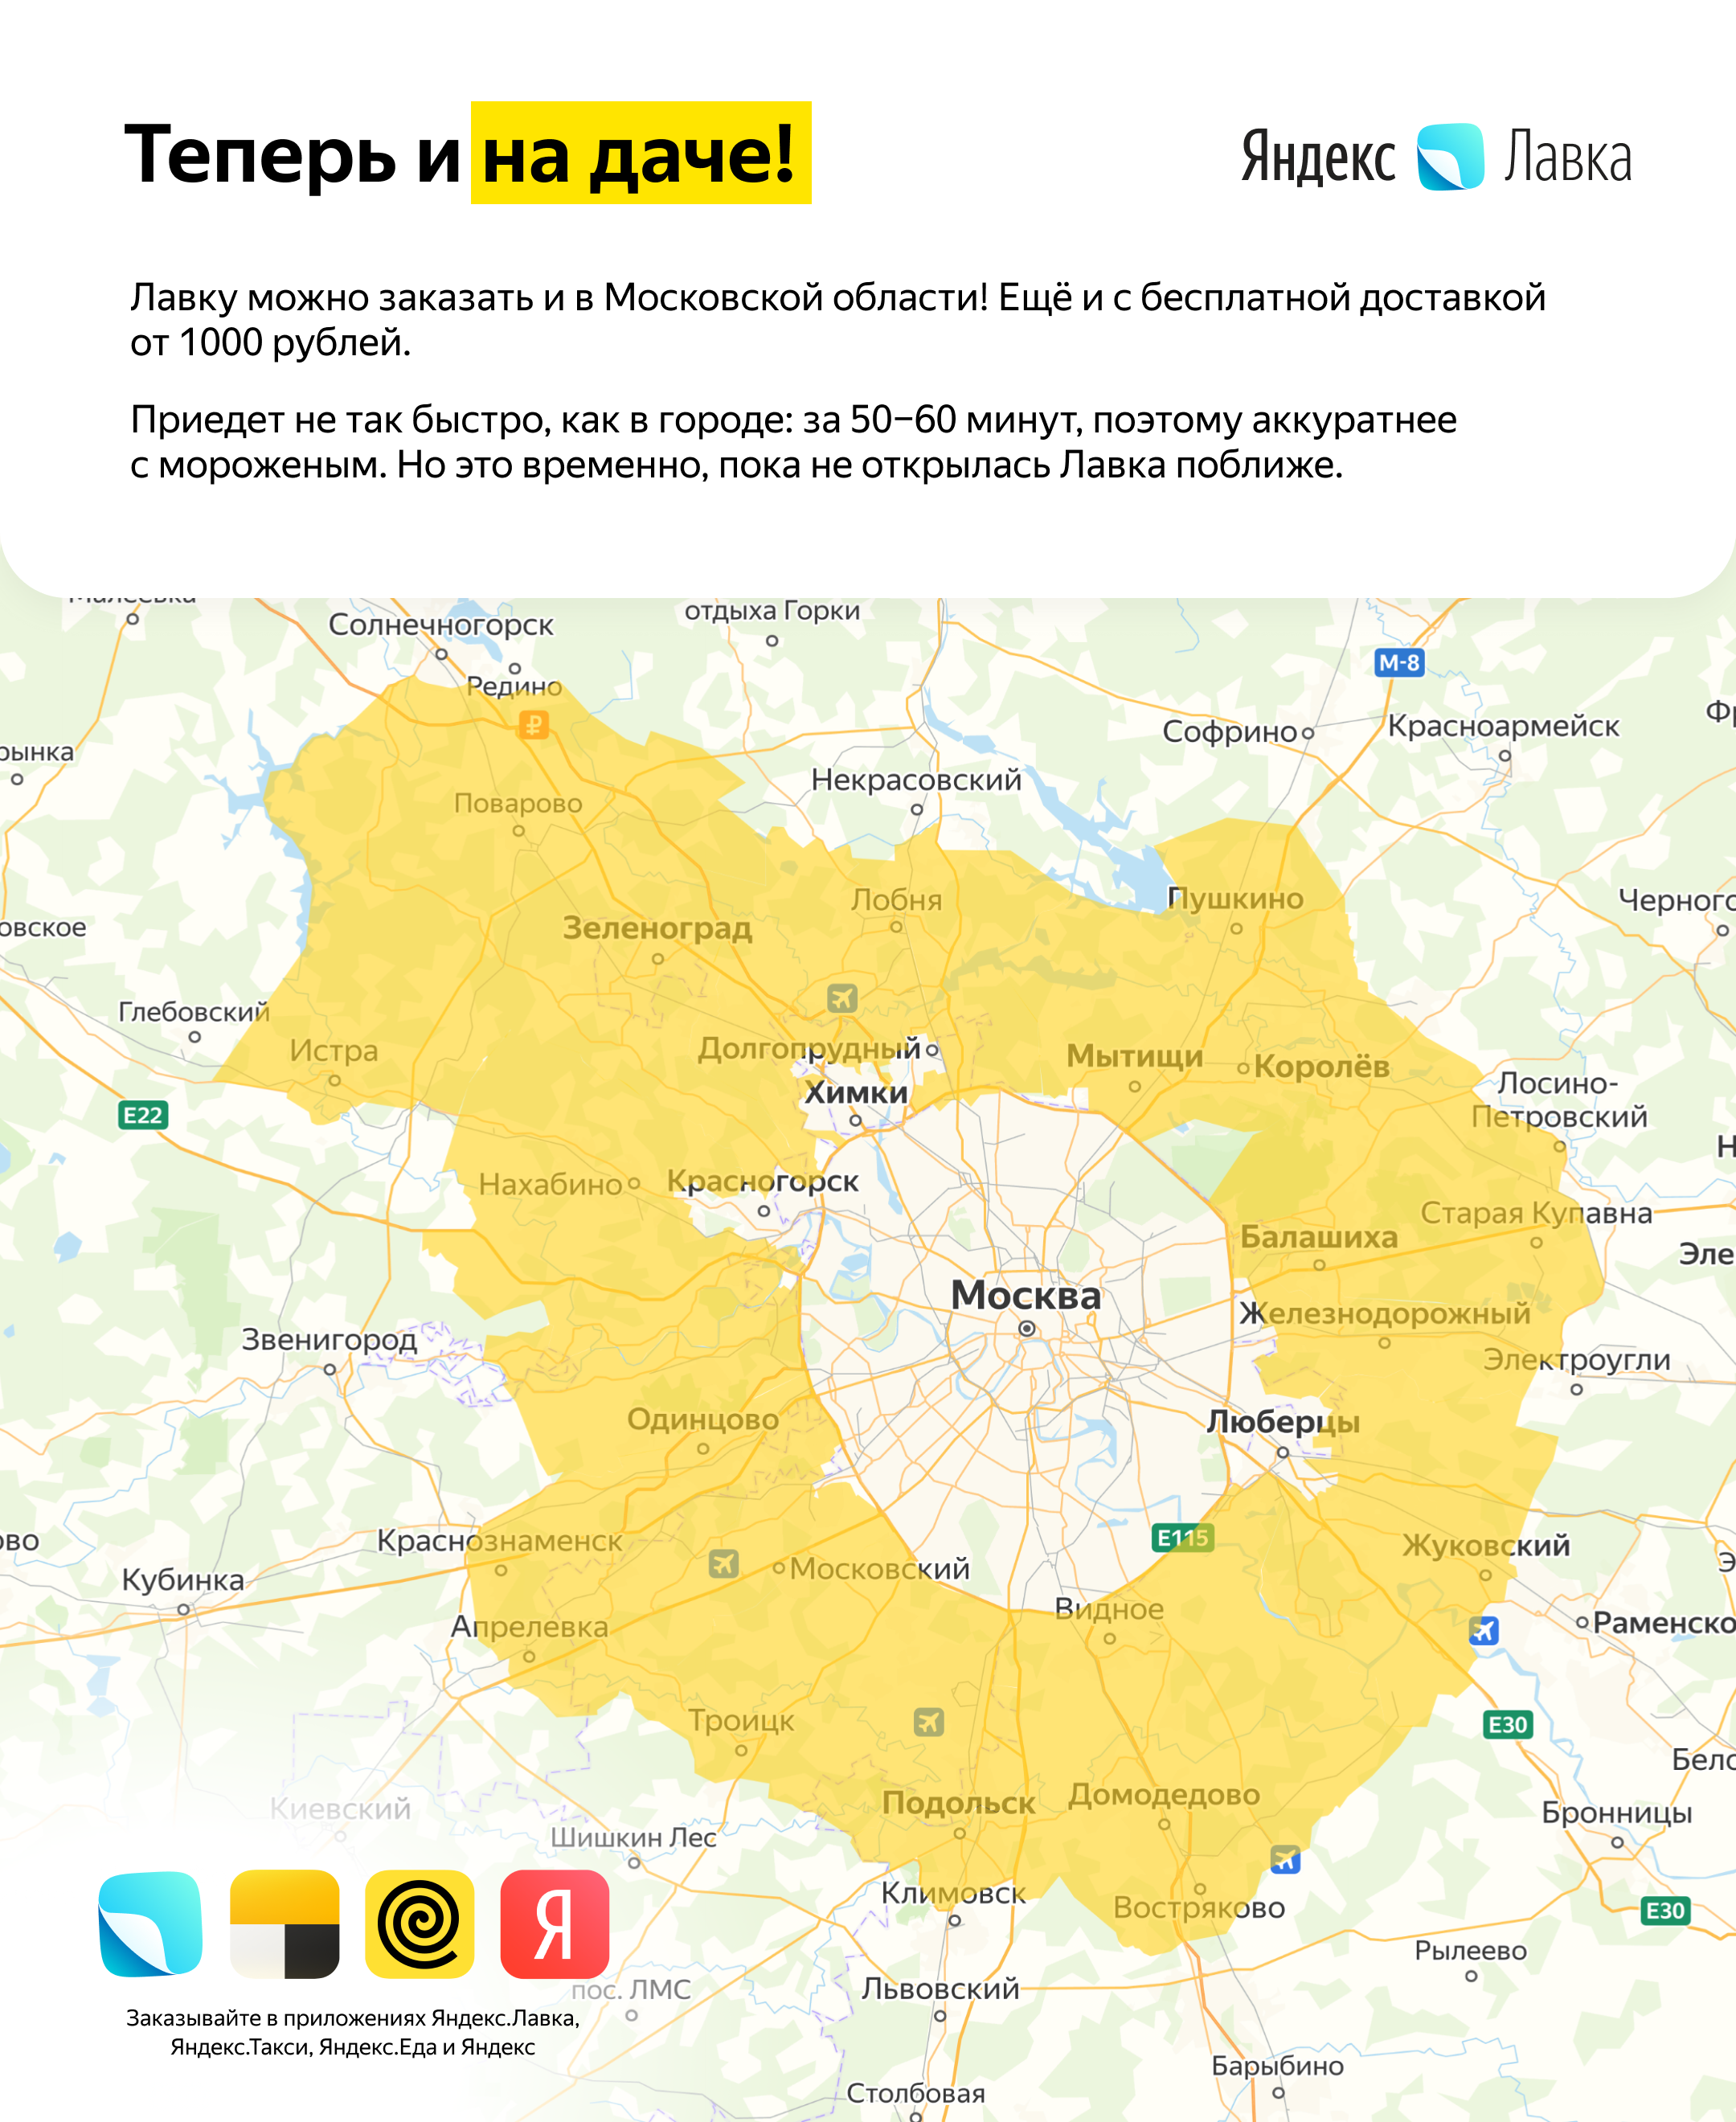 «Яндекс.Лавка» начала доставлять продукты на дачу